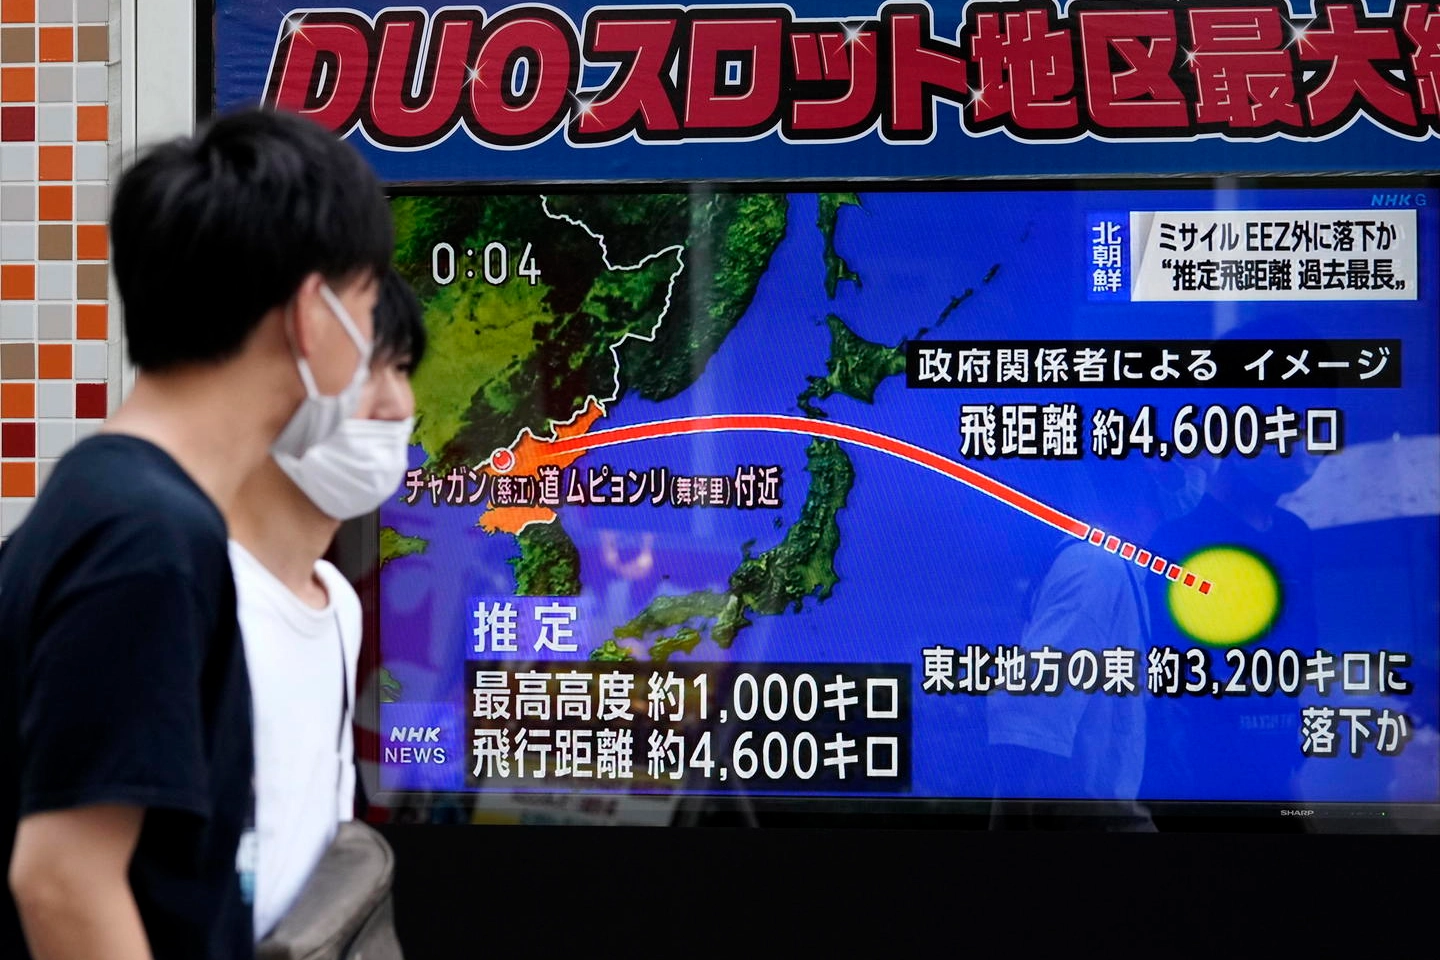 La notizia del lancio del missile da parte della Corea del Nord sulla tv giapponese (Ansa)